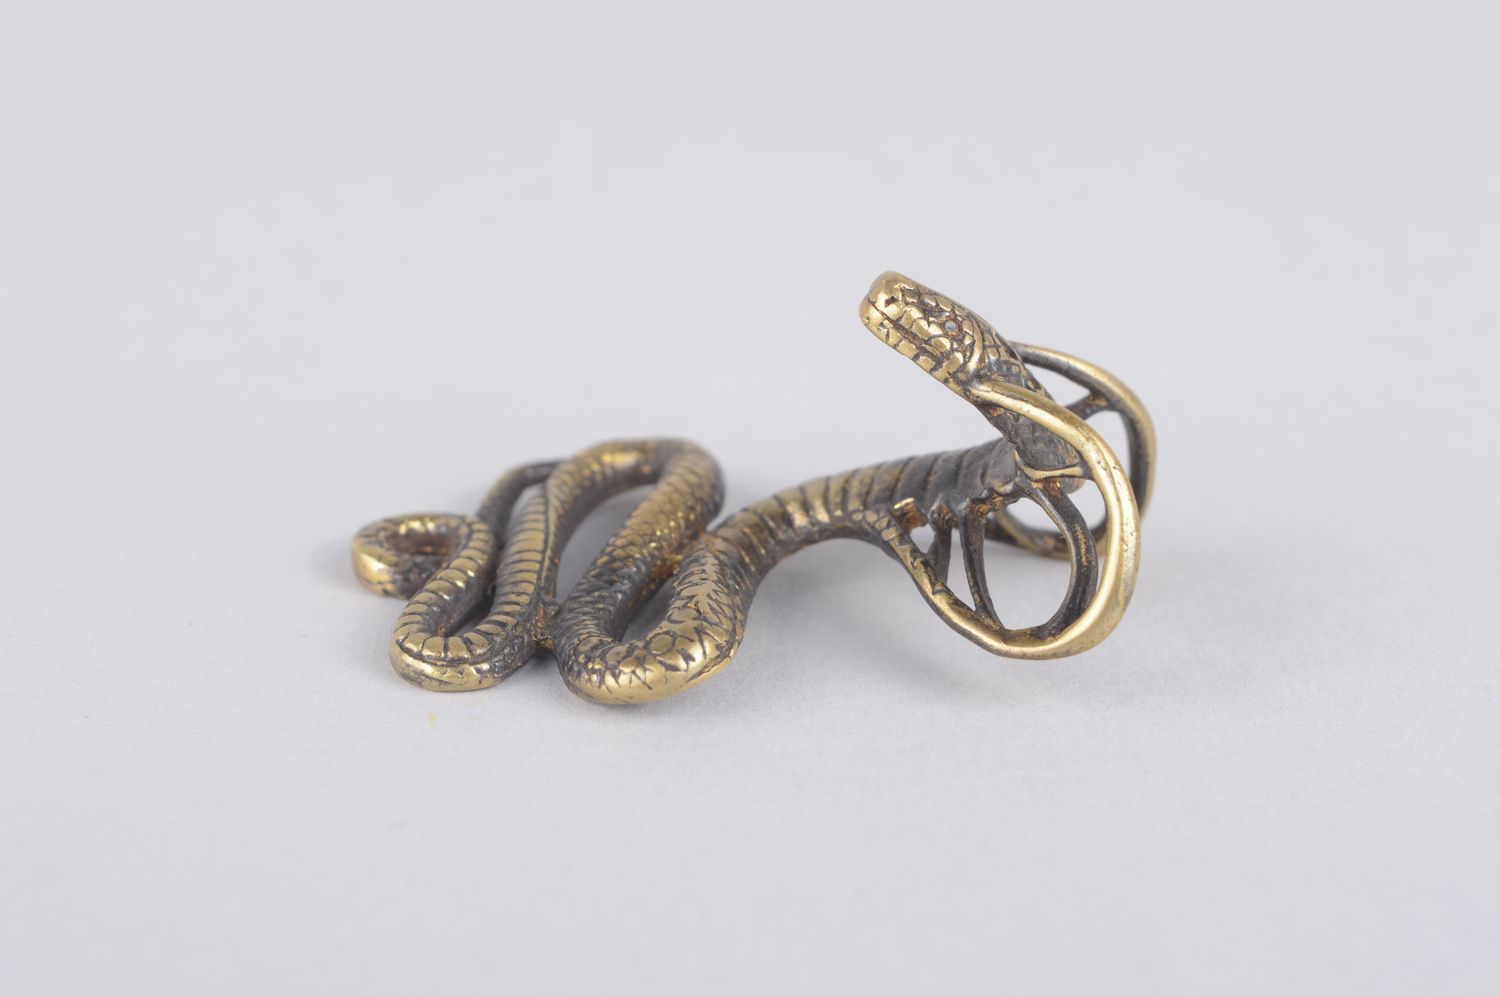 Bronze pendant handmade bronze jewelry metal pendant on cord designer jewelry photo 4